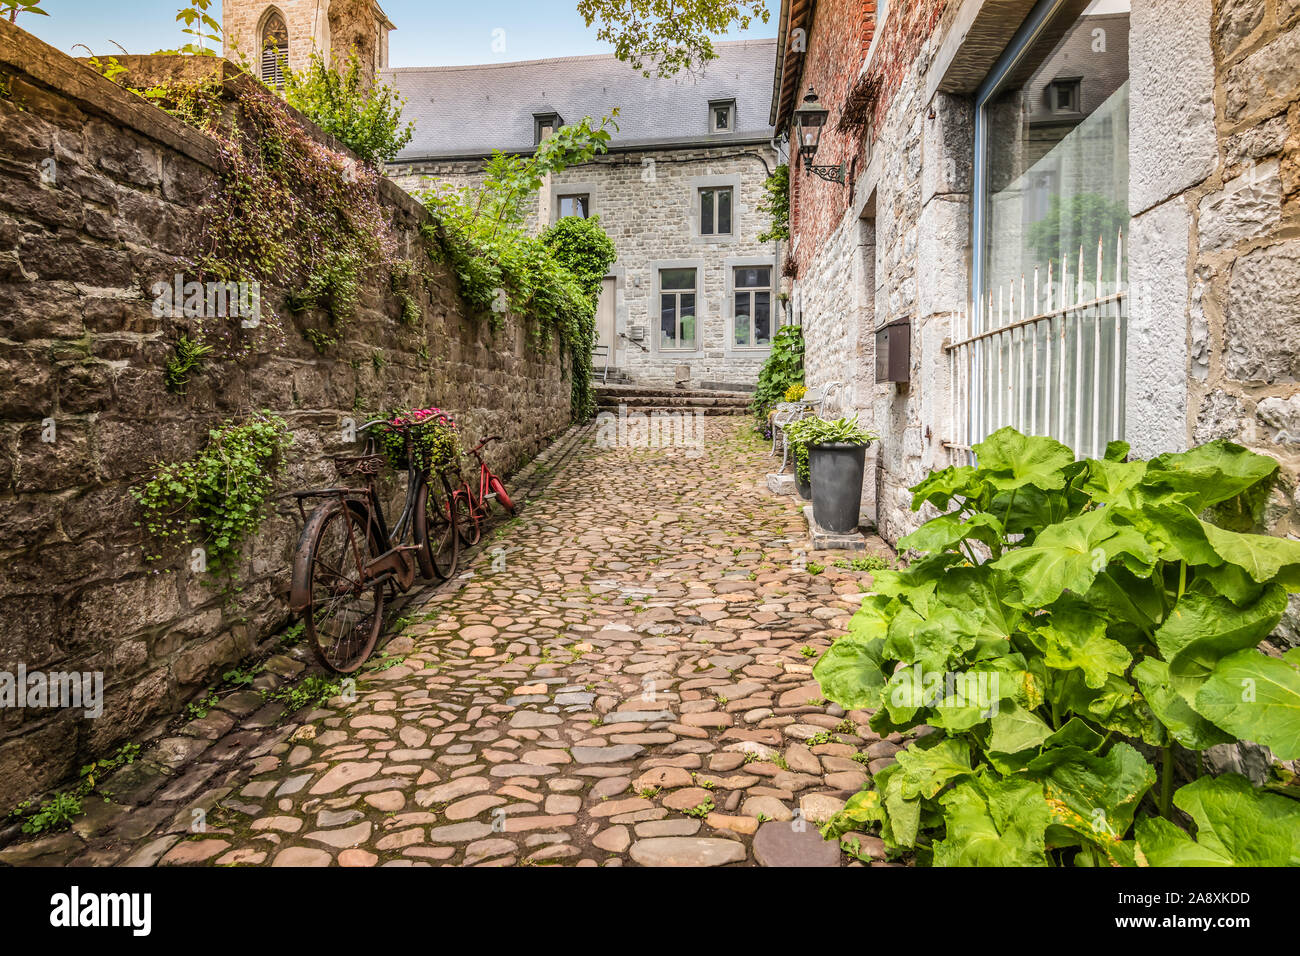 Cobblestone alley dans le vieux centre-ville de Durbuy, Wallonie, Ardennes Belges. Banque D'Images